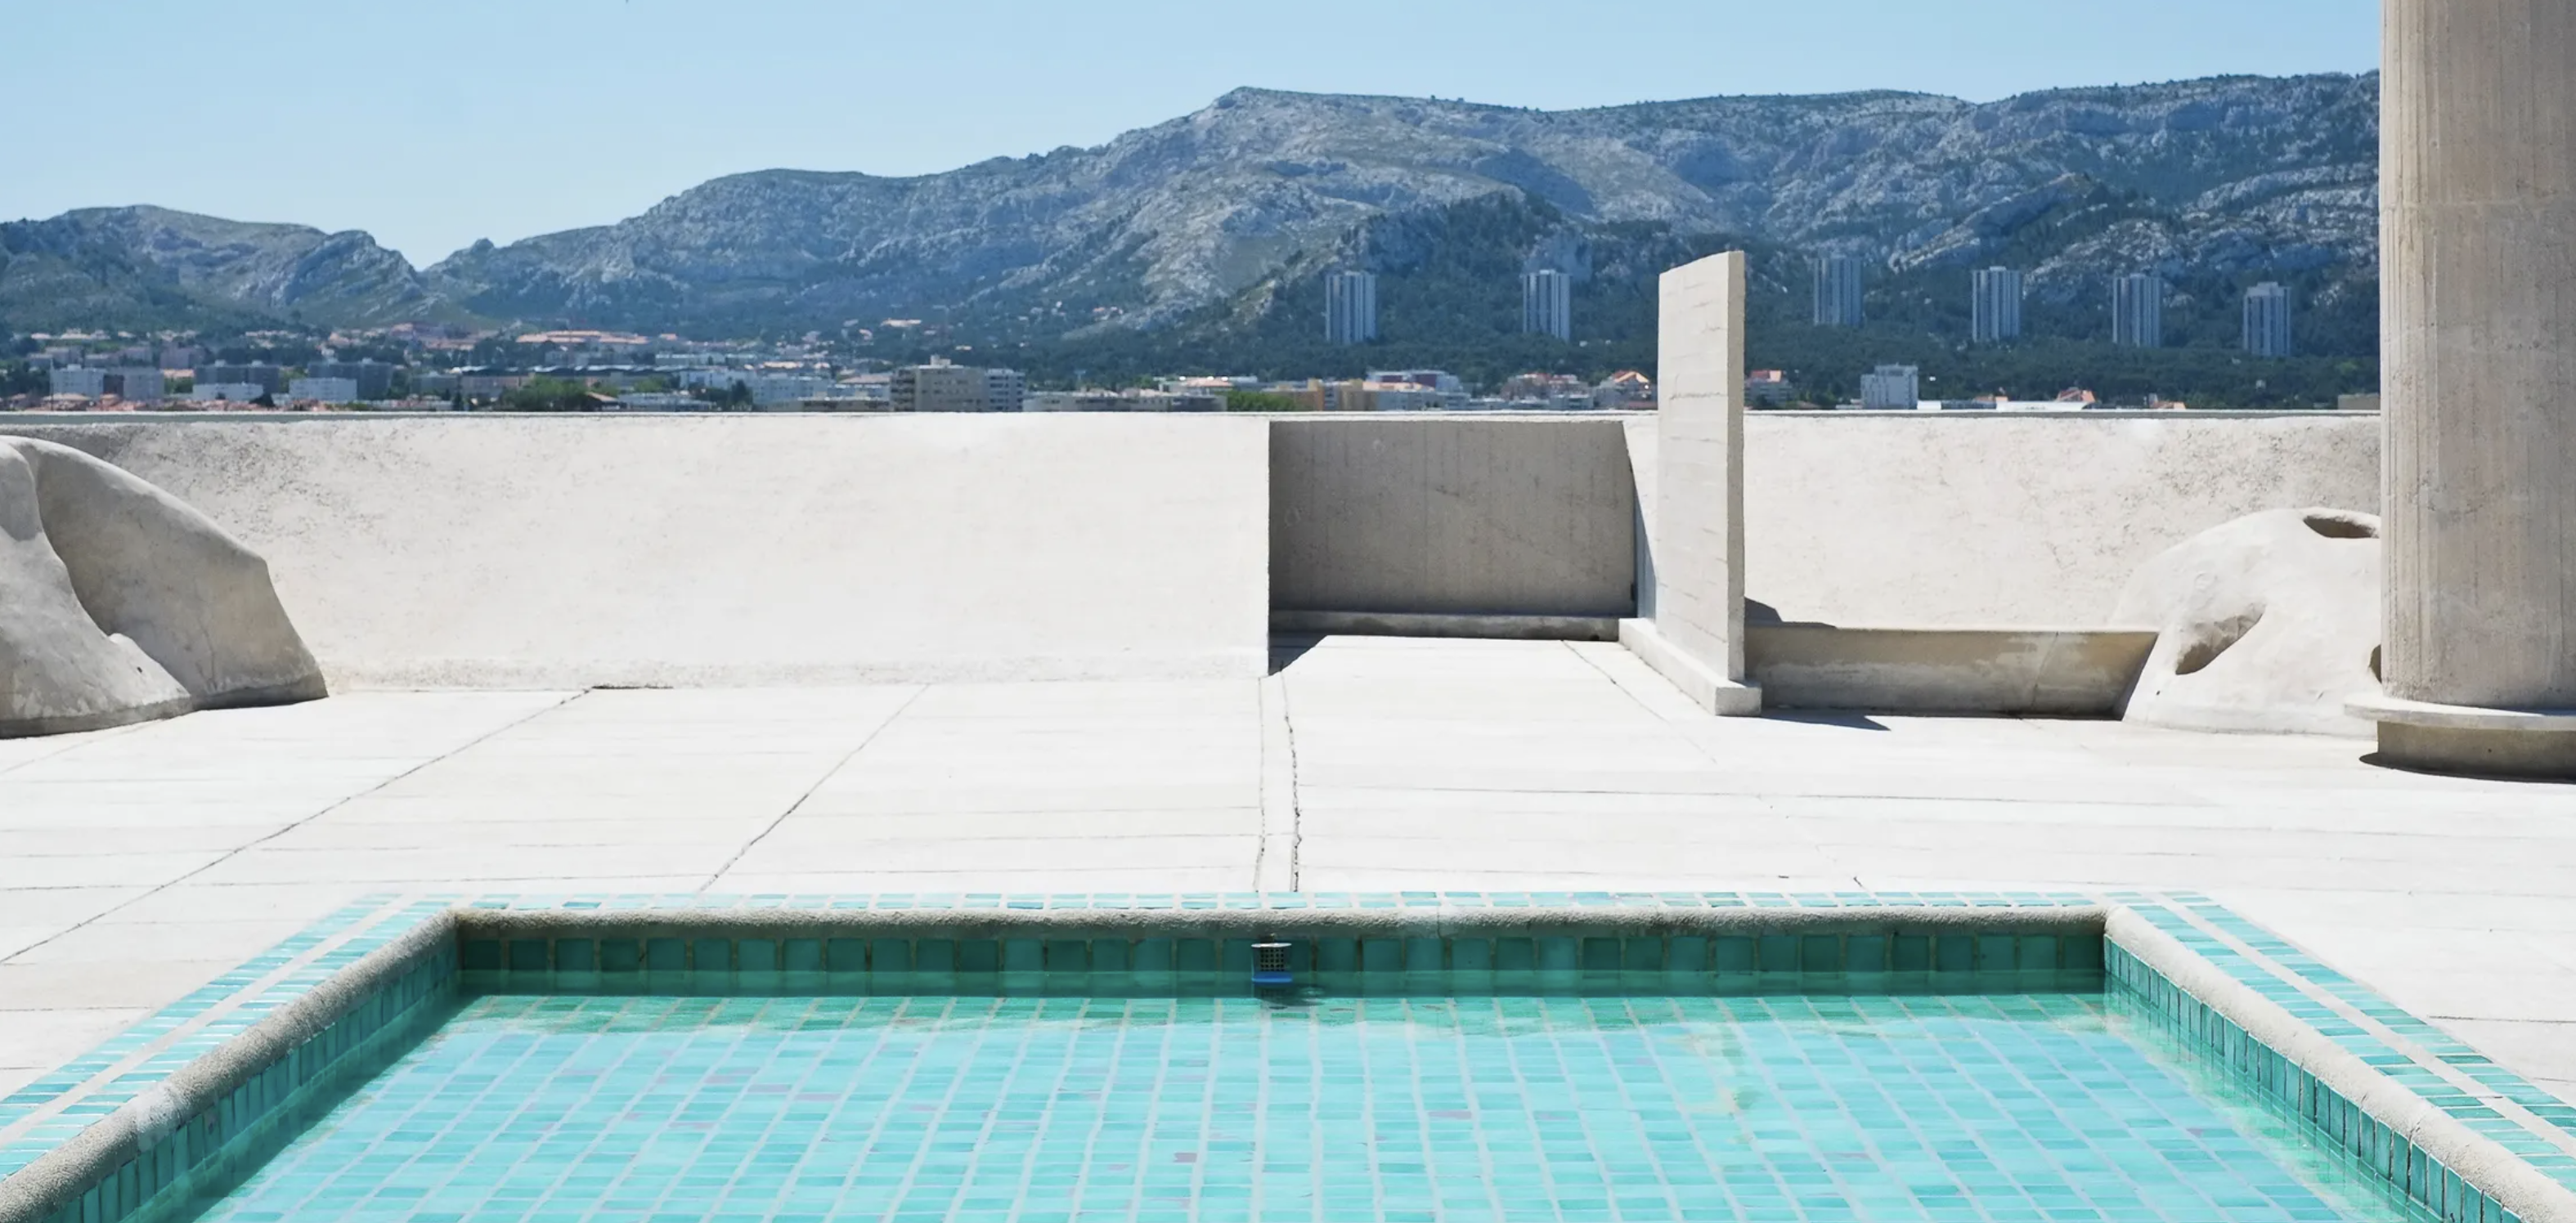 Le Corbusier's pool at the Cité Radieuse, Marseille, France.